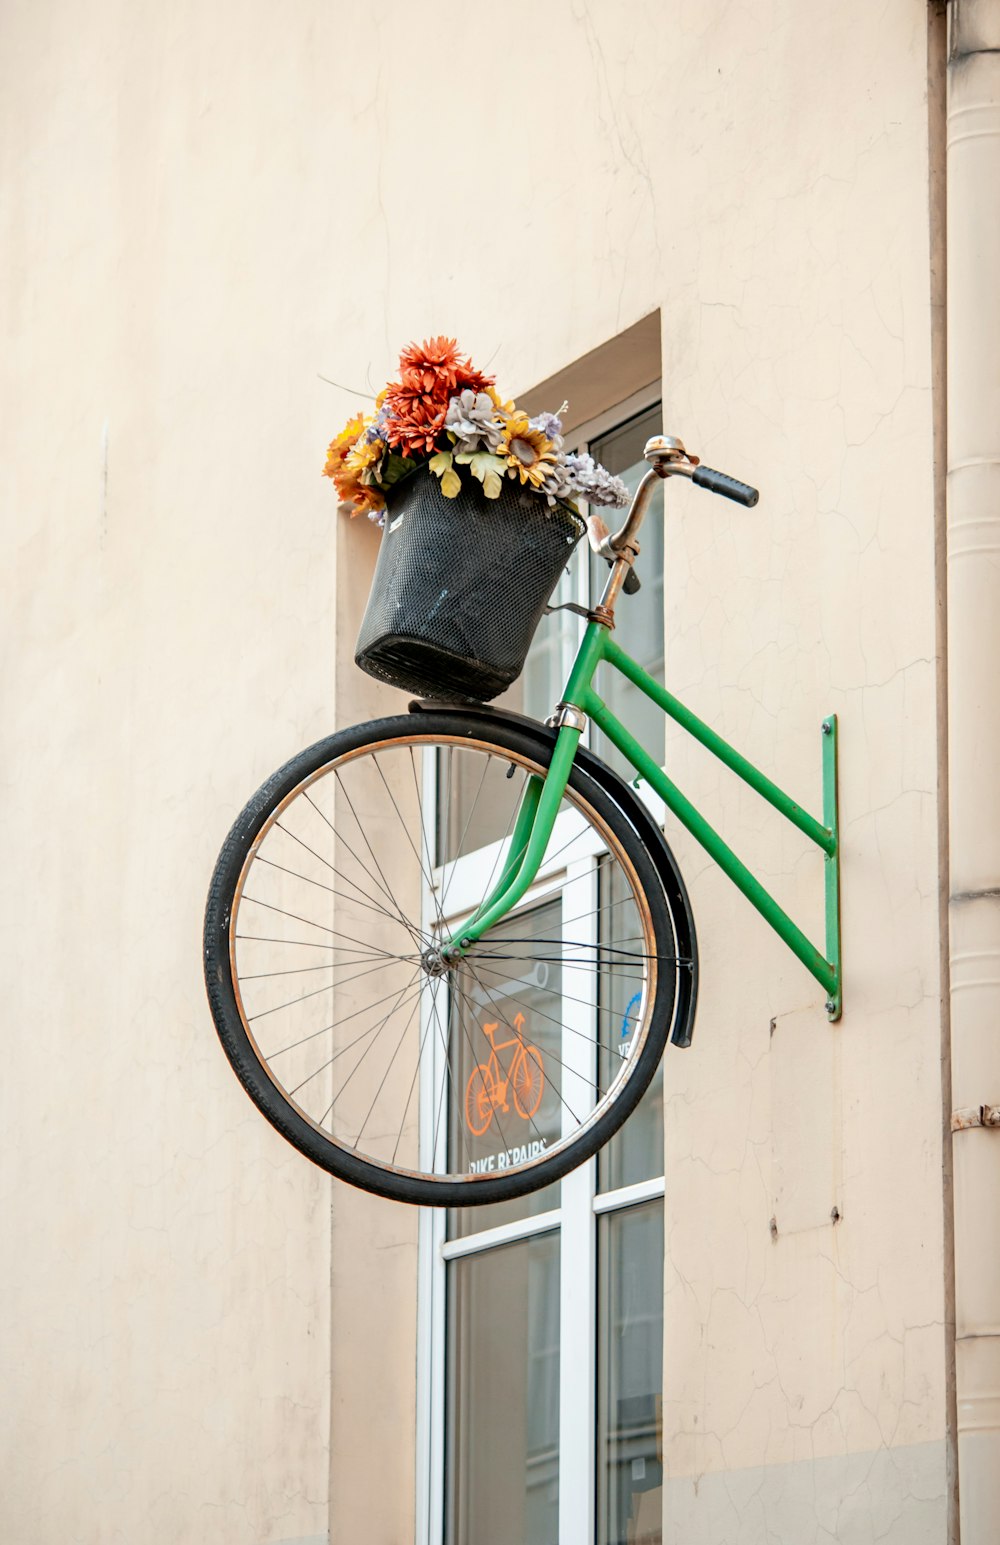 bicicleta verde da cidade com flores